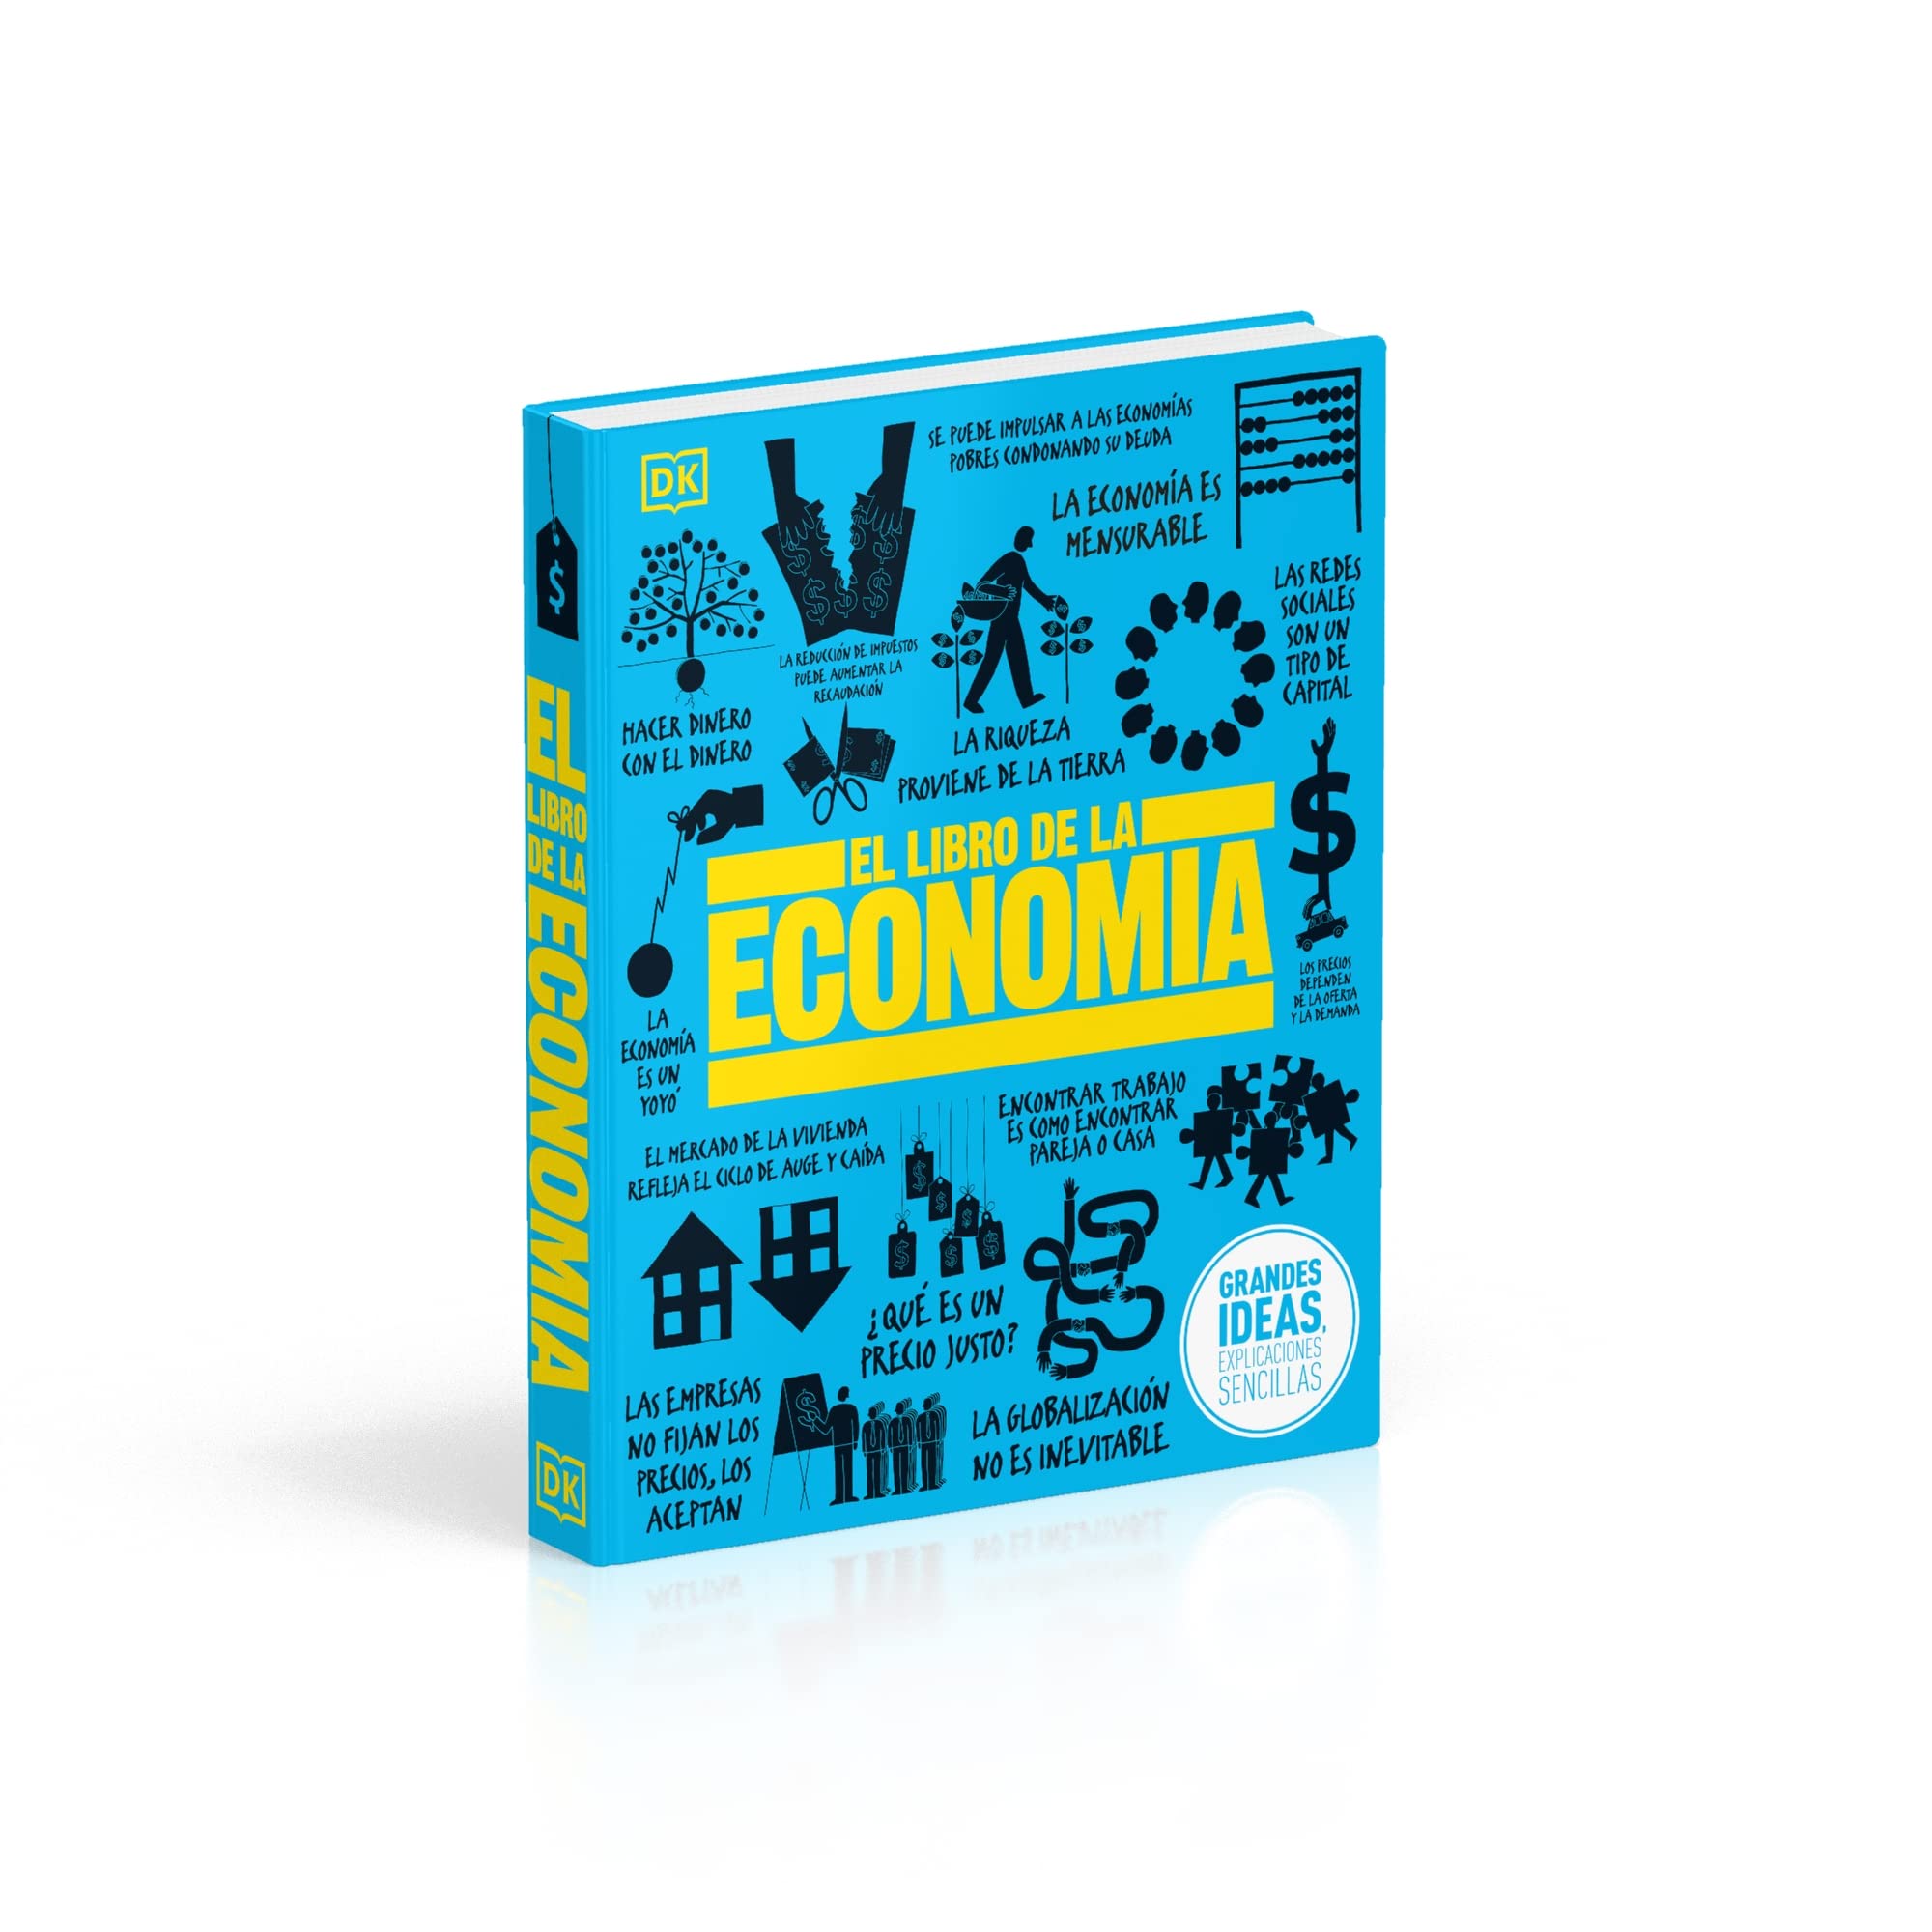 El Libro de la economía (The Economics Book) (DK Big Ideas) (Spanish Edition)